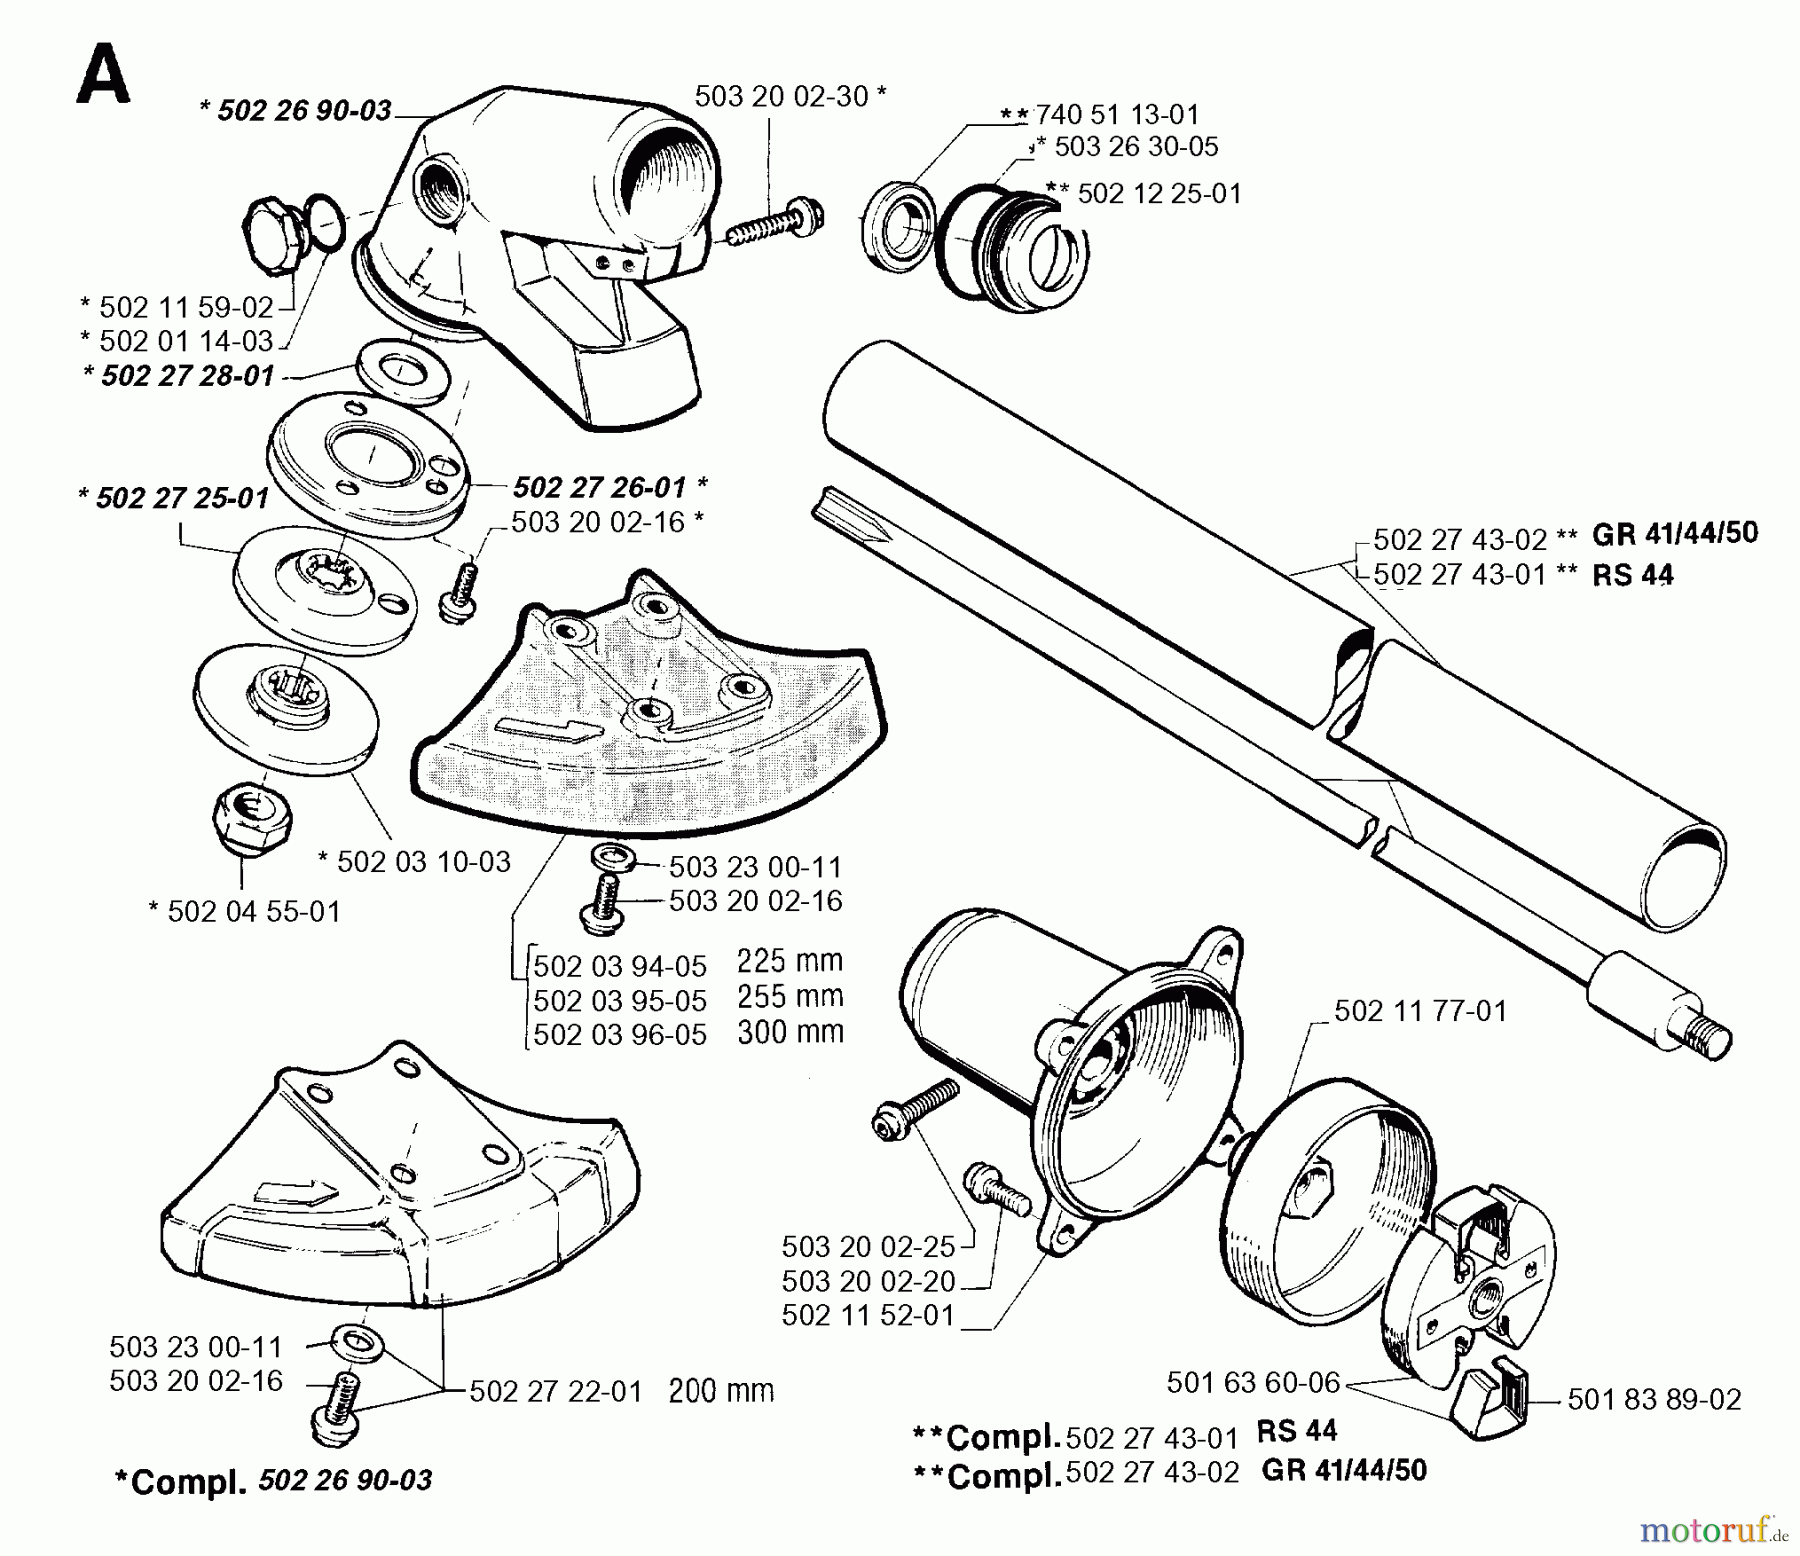  Jonsered Motorsensen, Trimmer RS44 - Jonsered String/Brush Trimmer (1994-03) BEVEL GEAR SHAFT